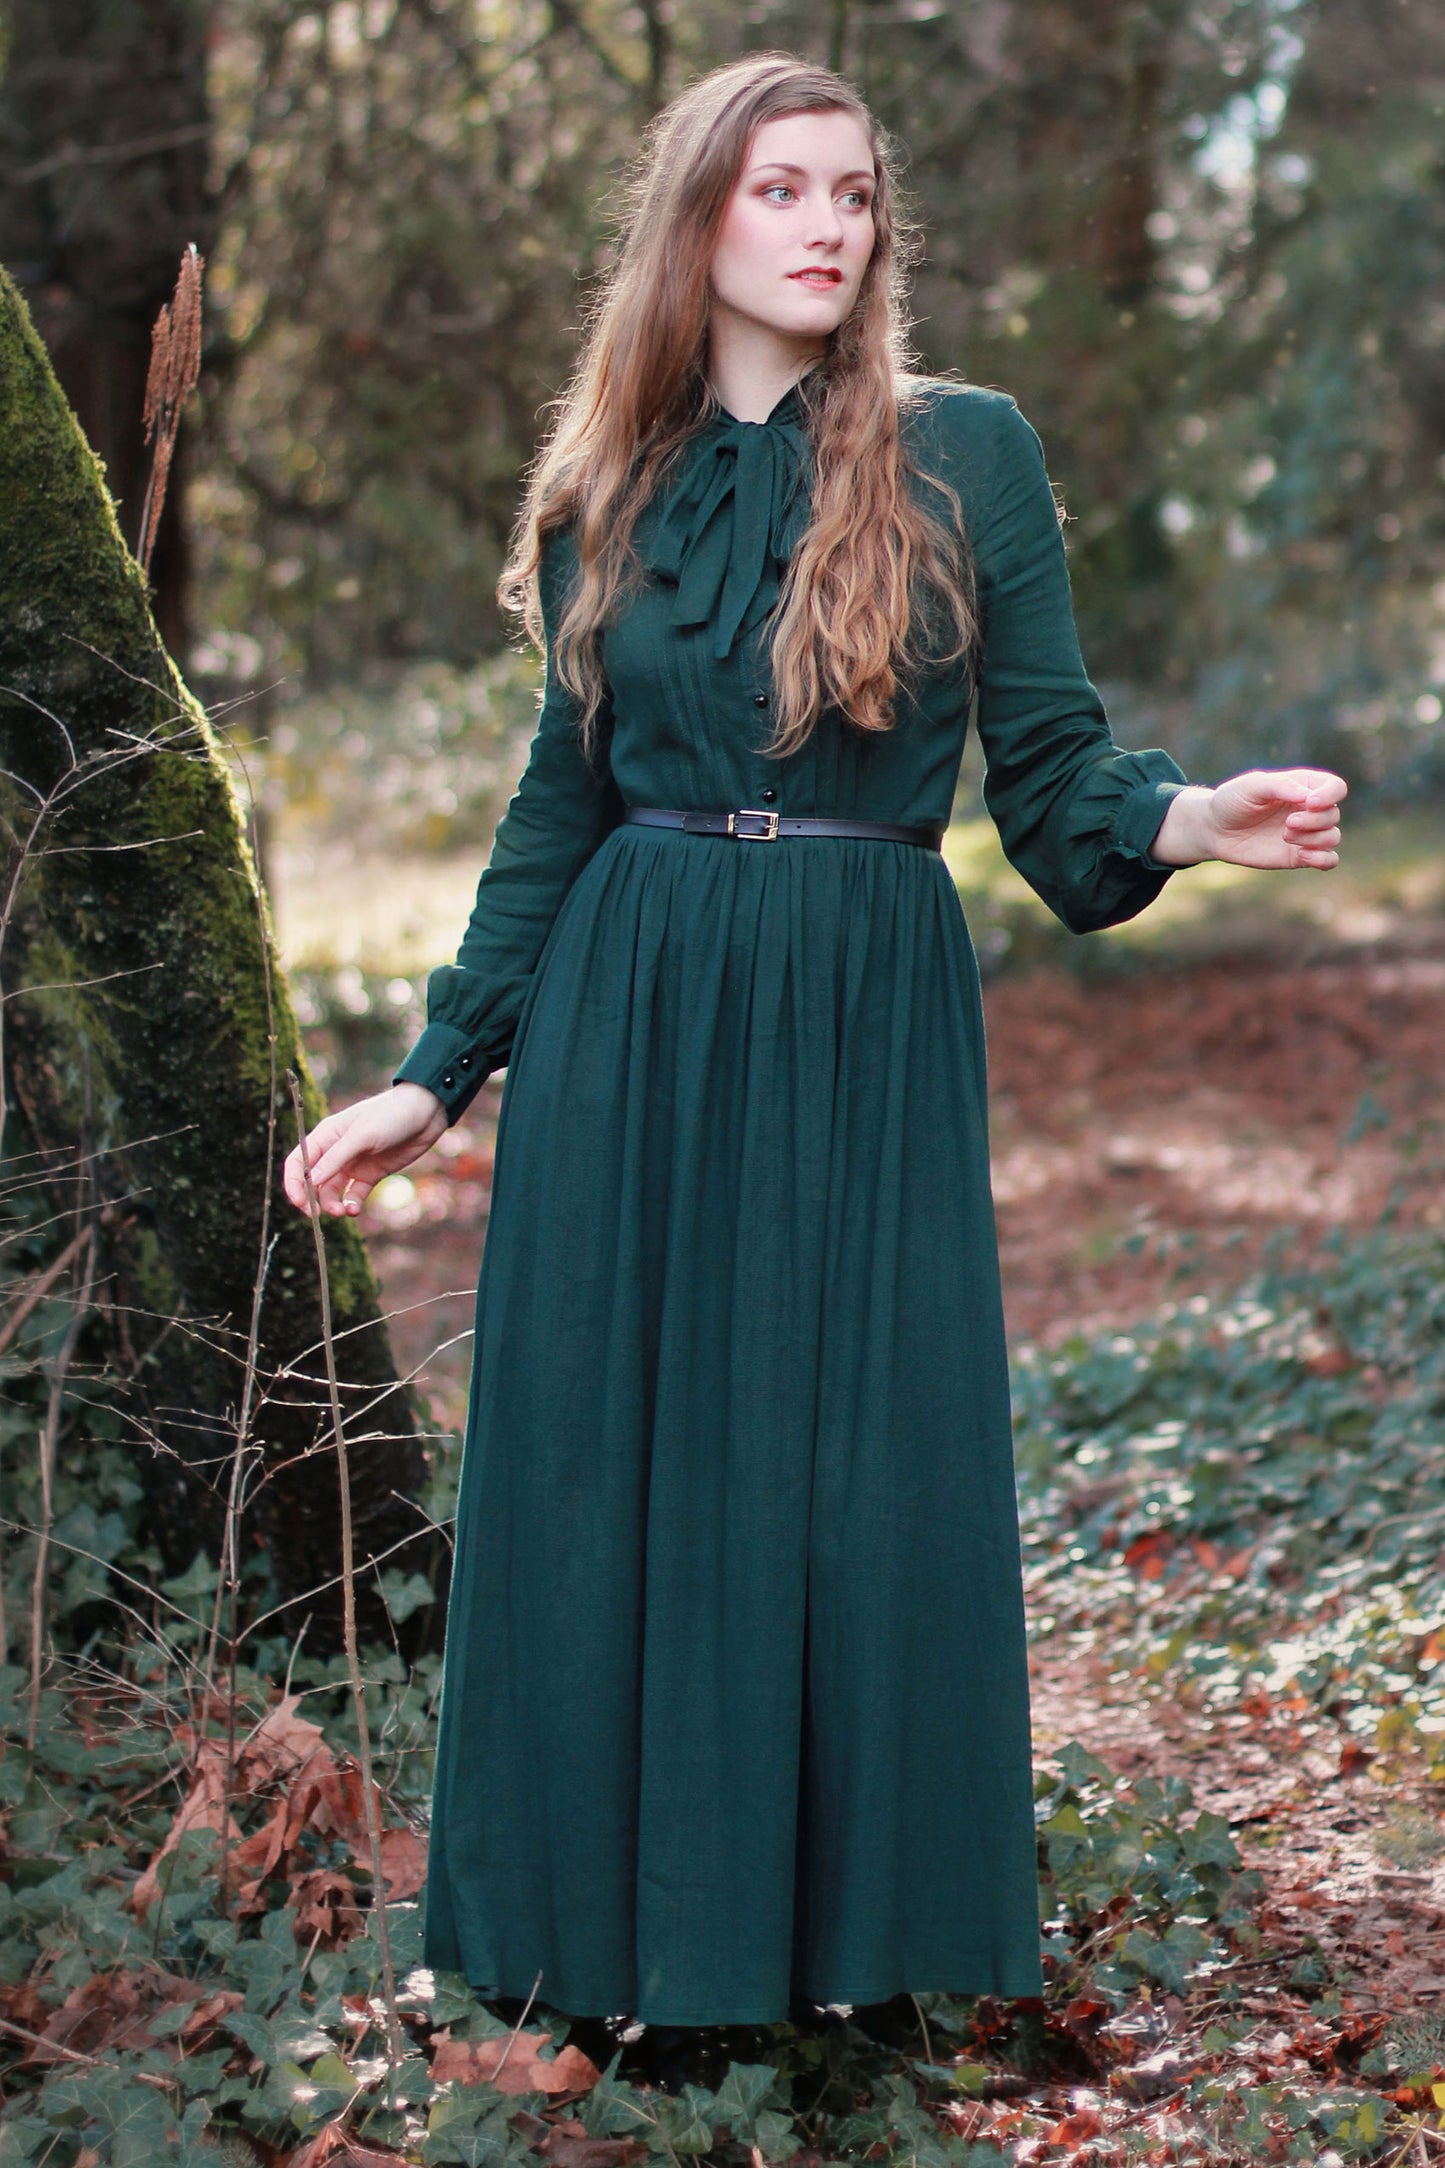 Vintage inspired Medieval Dress 2619